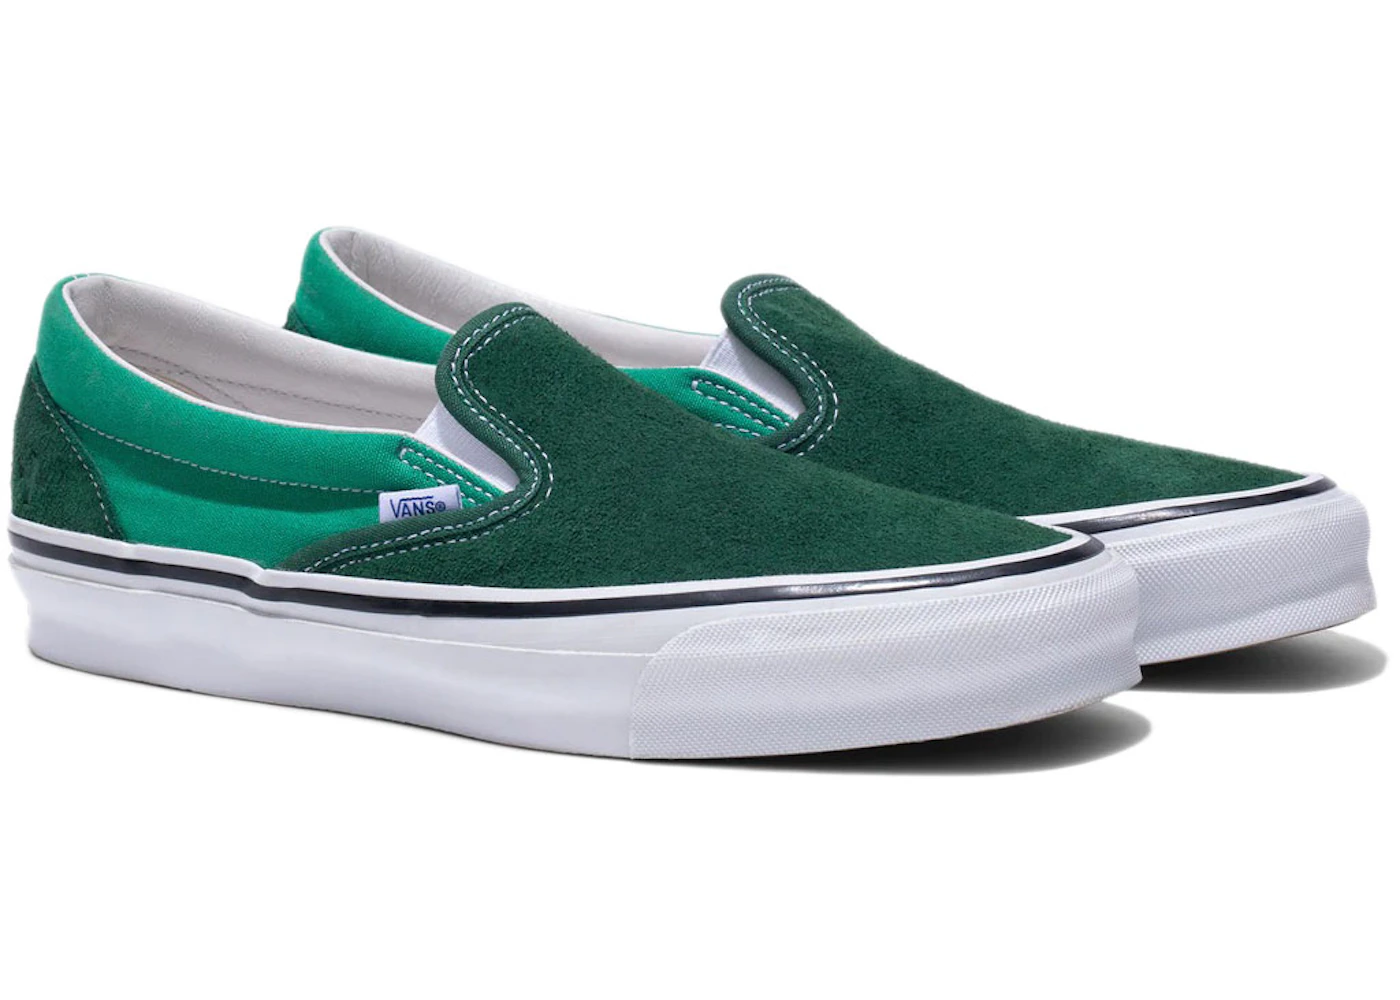 Vans Vault OG CLassic Slip-On LX Noah Green Men's - Sneakers - US